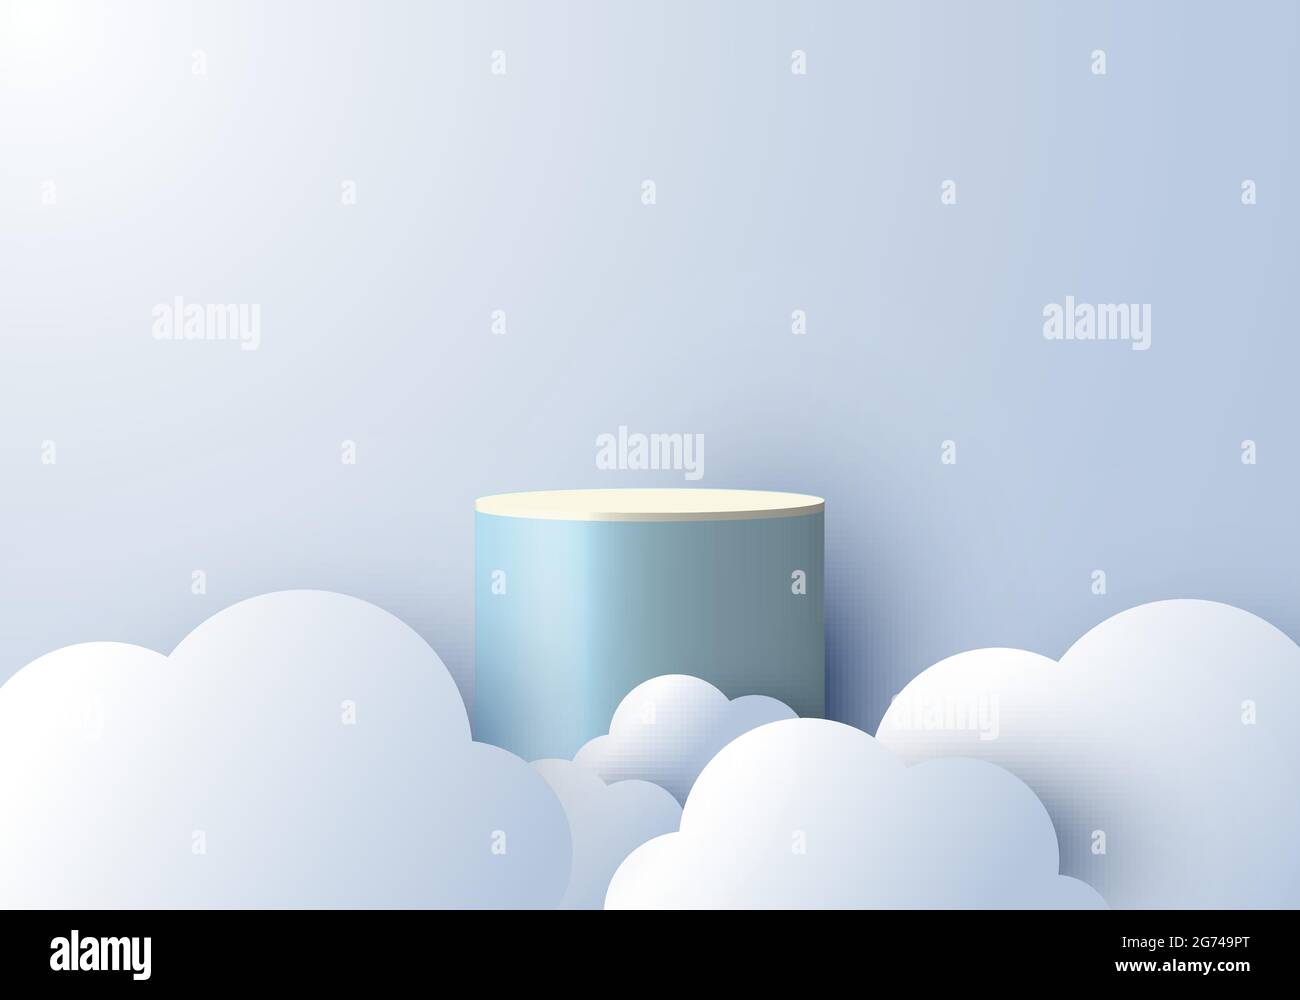 3D réaliste abstrait scène minimale podium vide avec style de coupe de papier nuageux sur fond bleu ciel. Conception pour la présentation des produits, la maquette, Illustration de Vecteur